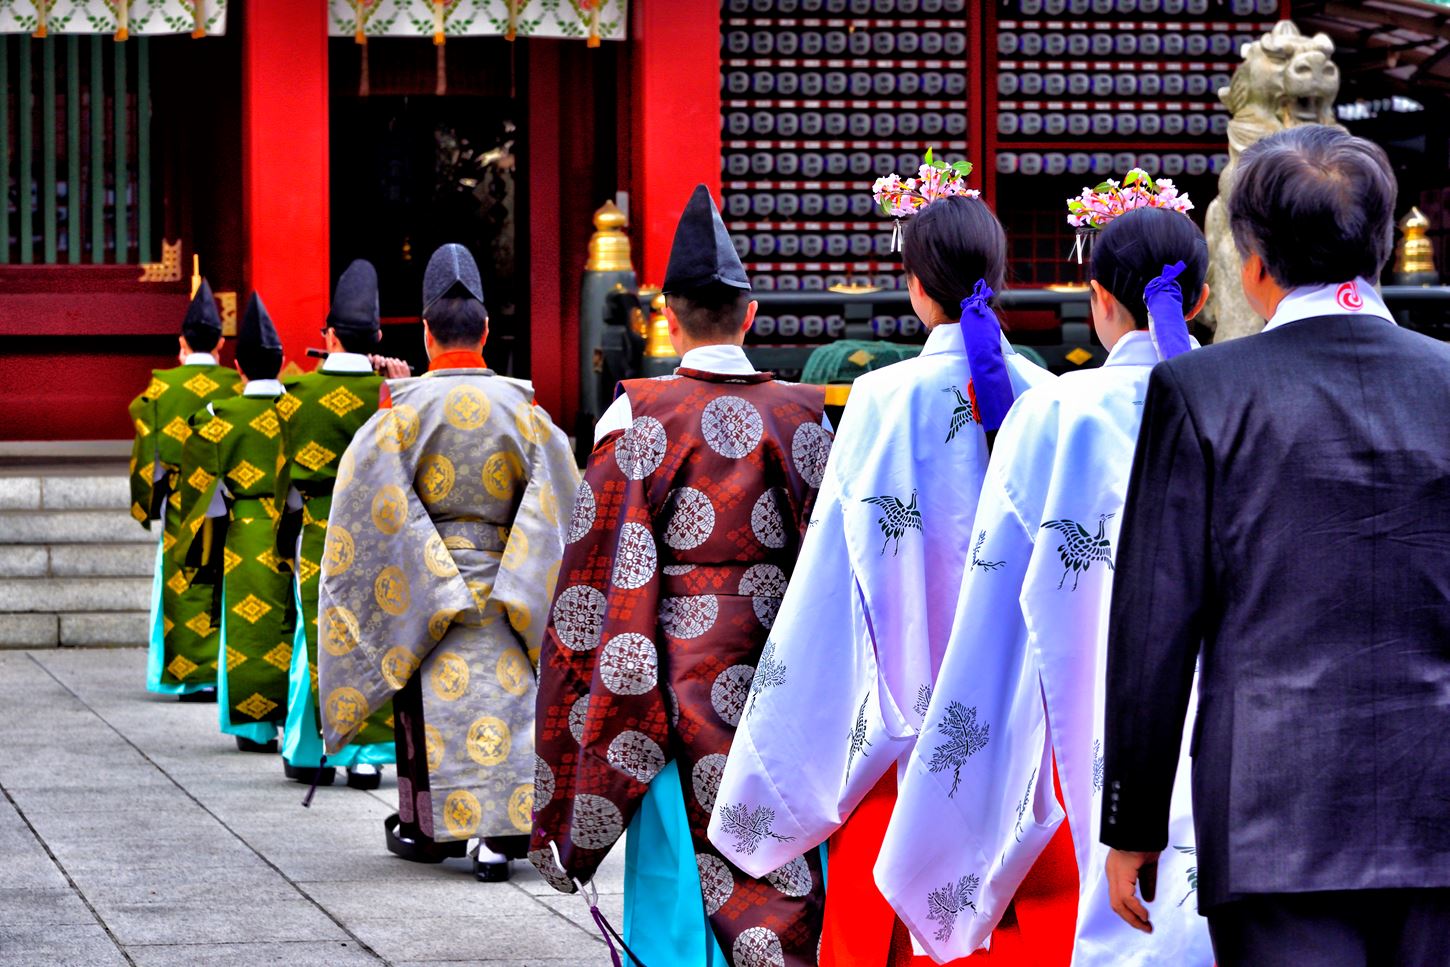 Discovering Shinto in Kanda Myojin Shrine in Tokyo